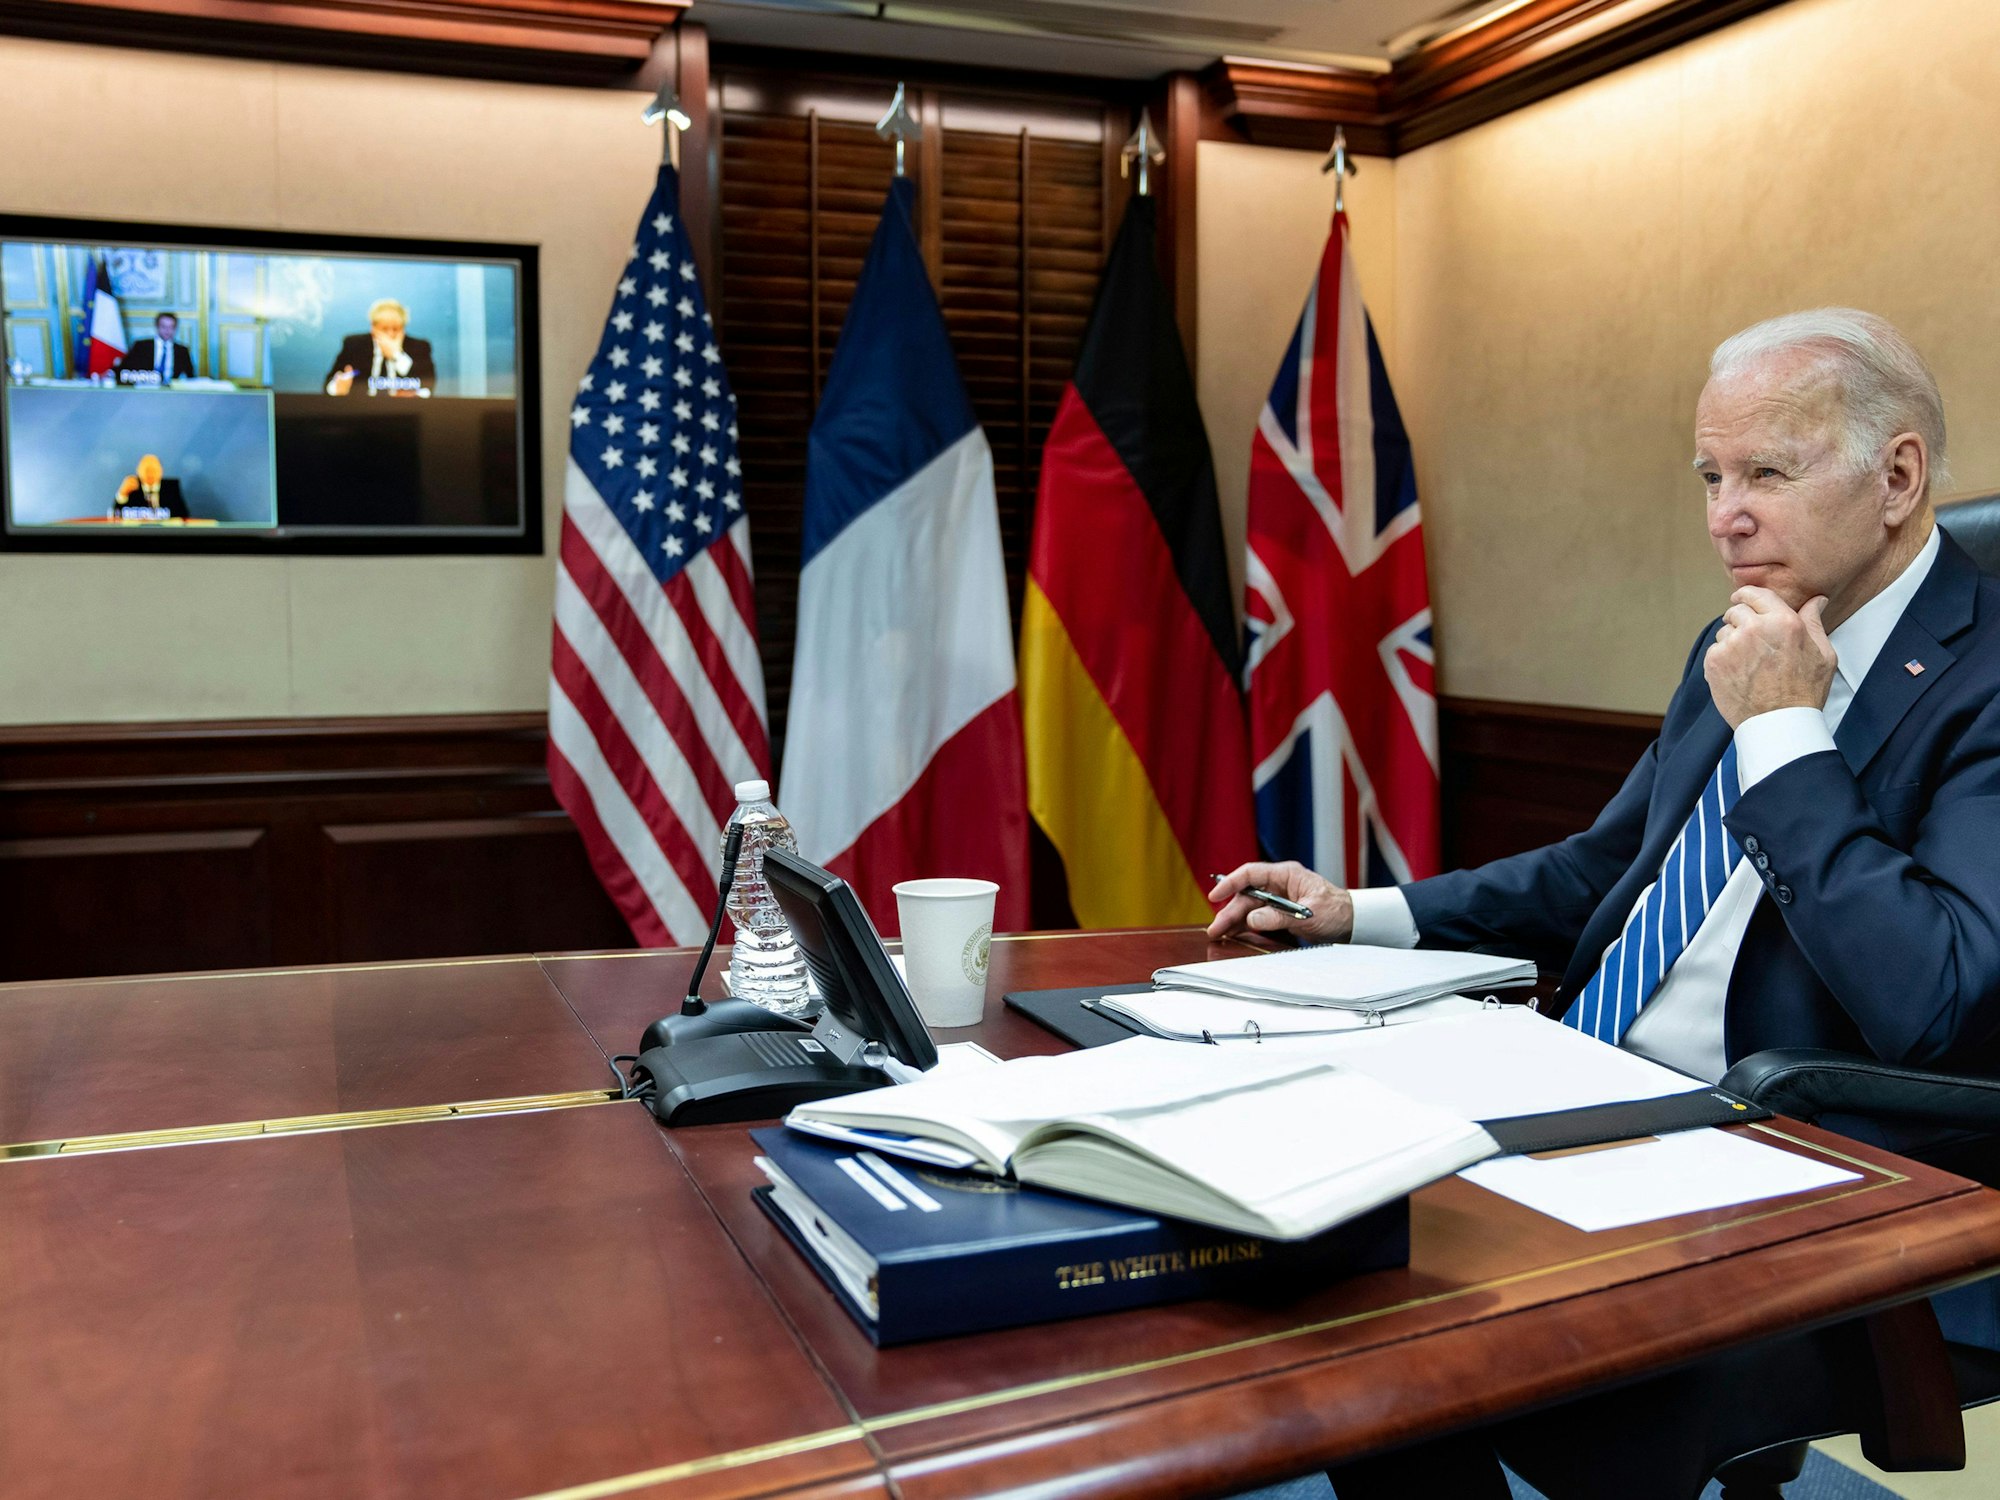 Dieses vom Weißen Haus zur Verfügung gestellte Foto zeigt Joe Biden, Präsident der USA, während einer Videoschalte am 7. März 2022 mit dem französischen Präsidenten Macron, dem deutschen Bundeskanzler Scholz und dem britischen Premierminister Johnson im Situation Room des Weißen Hauses. +++